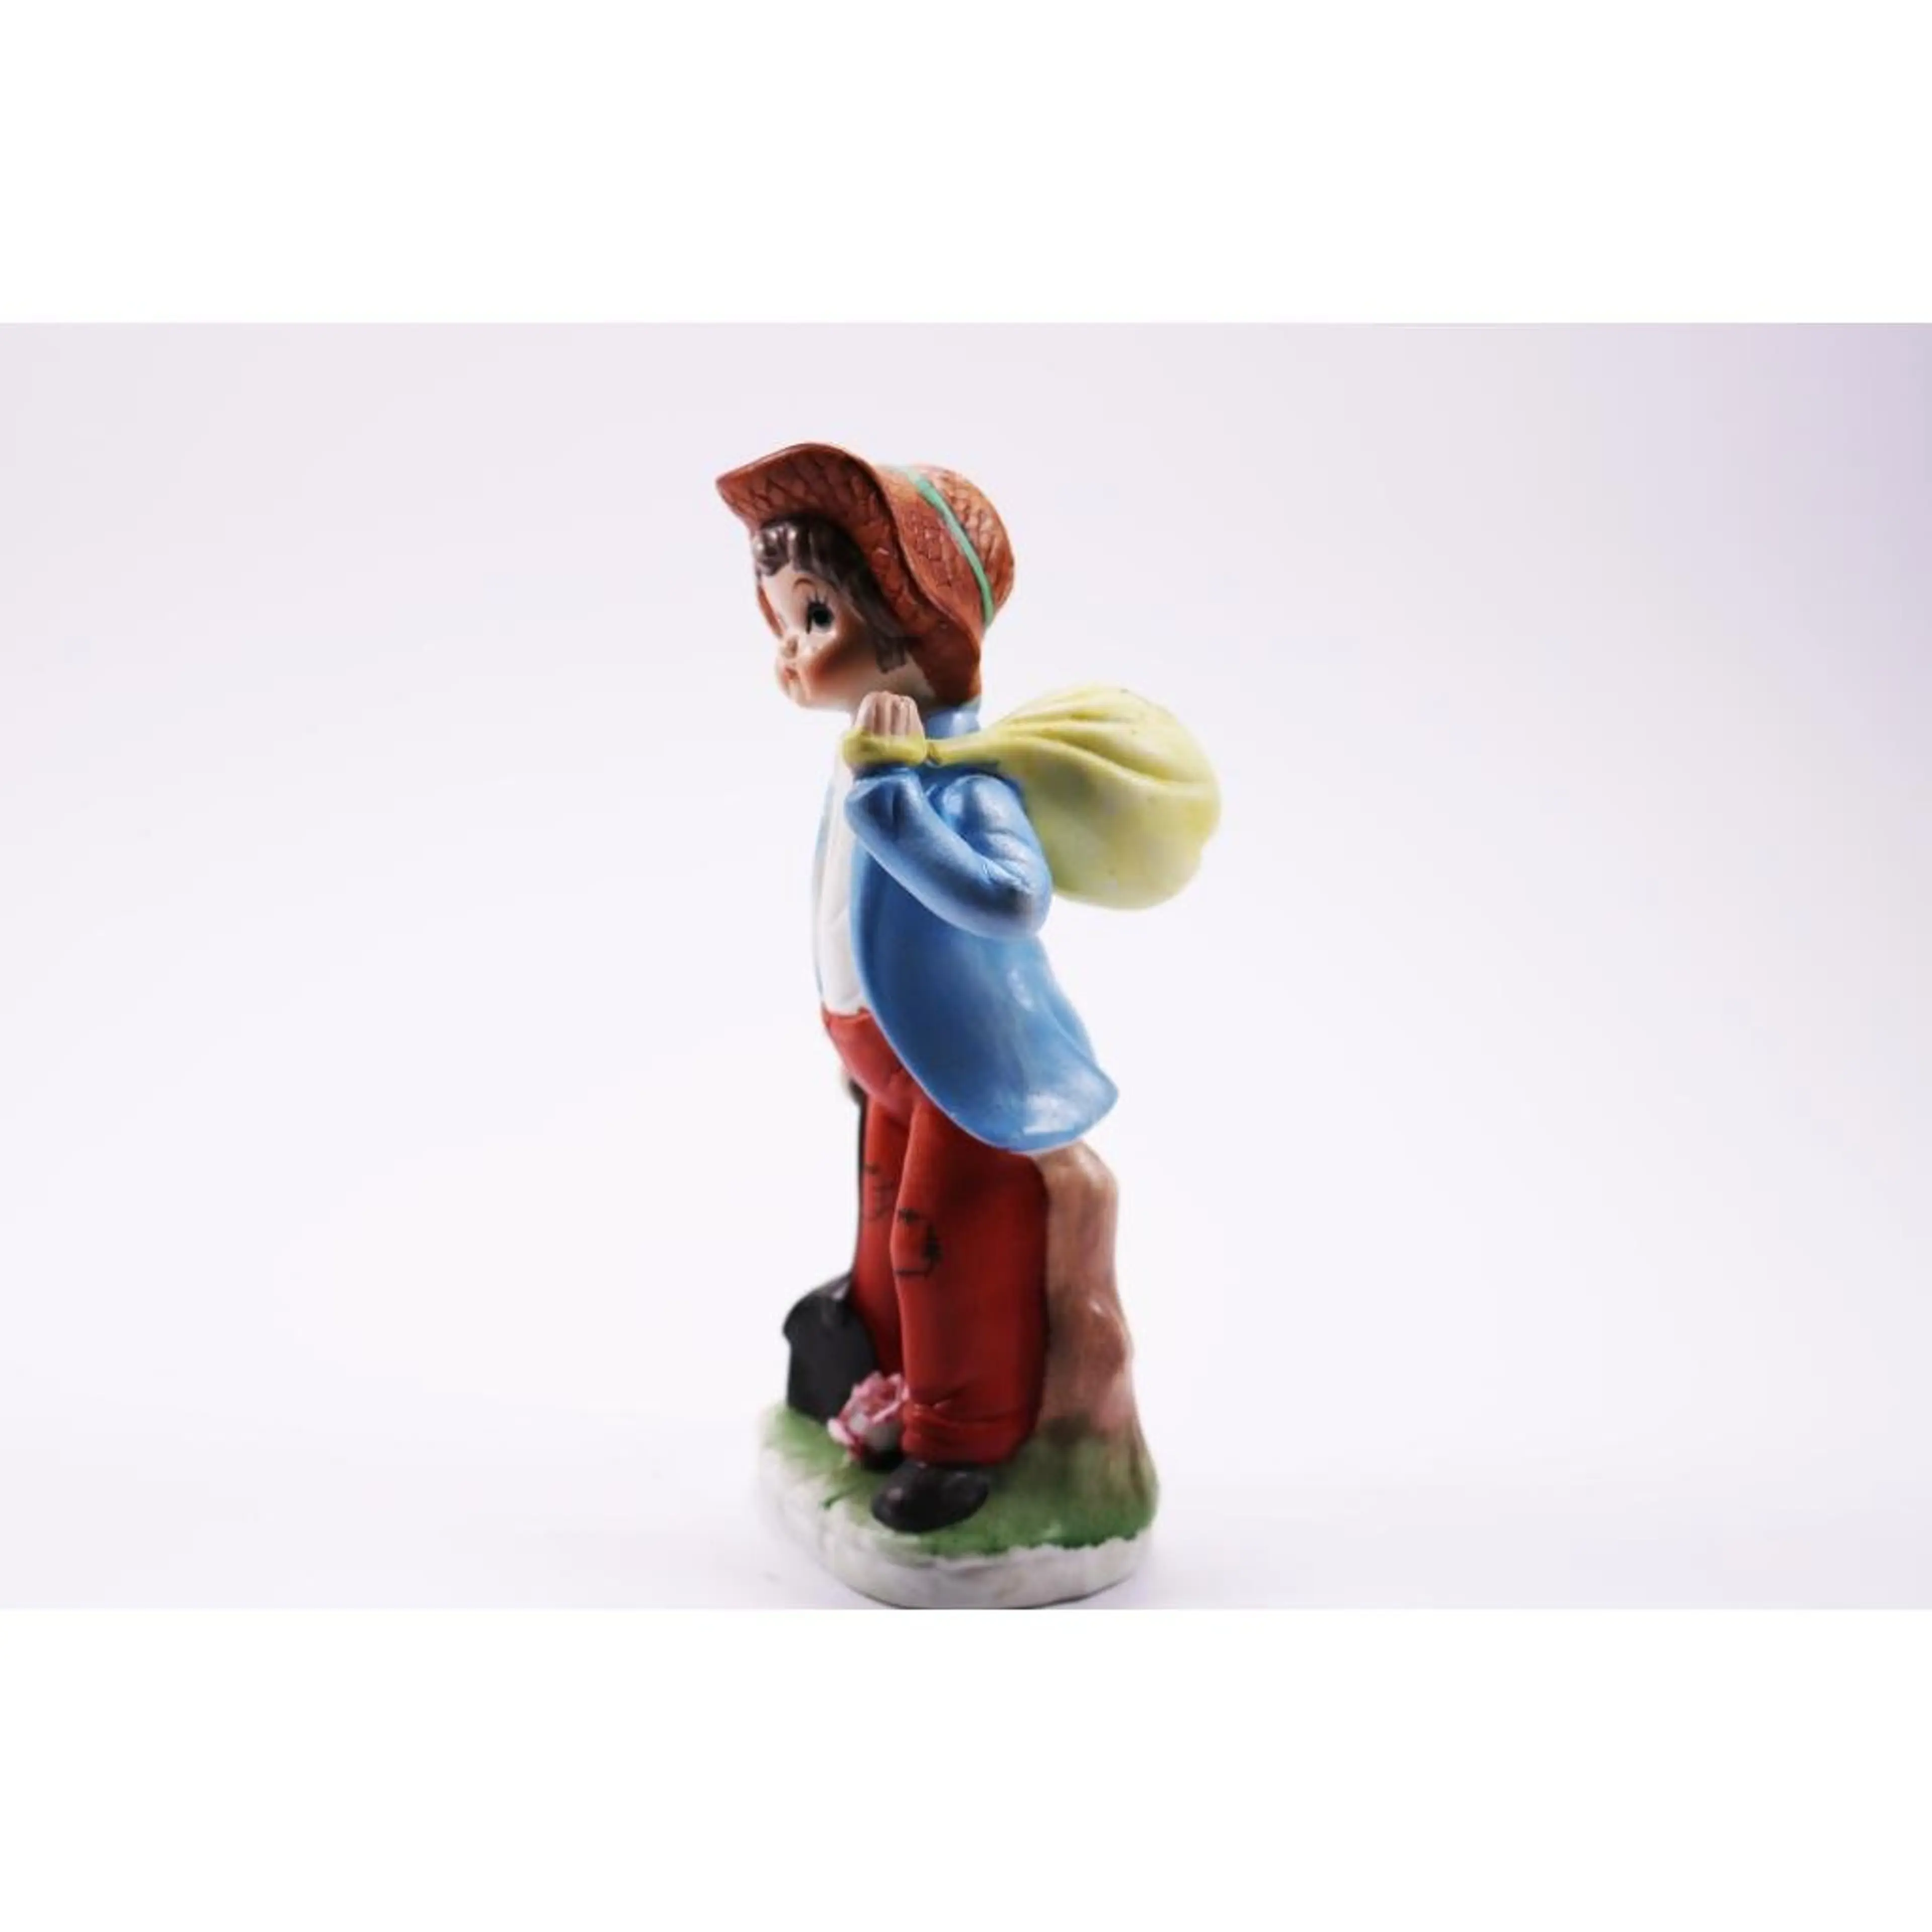 Figurine Boy Brown Hat